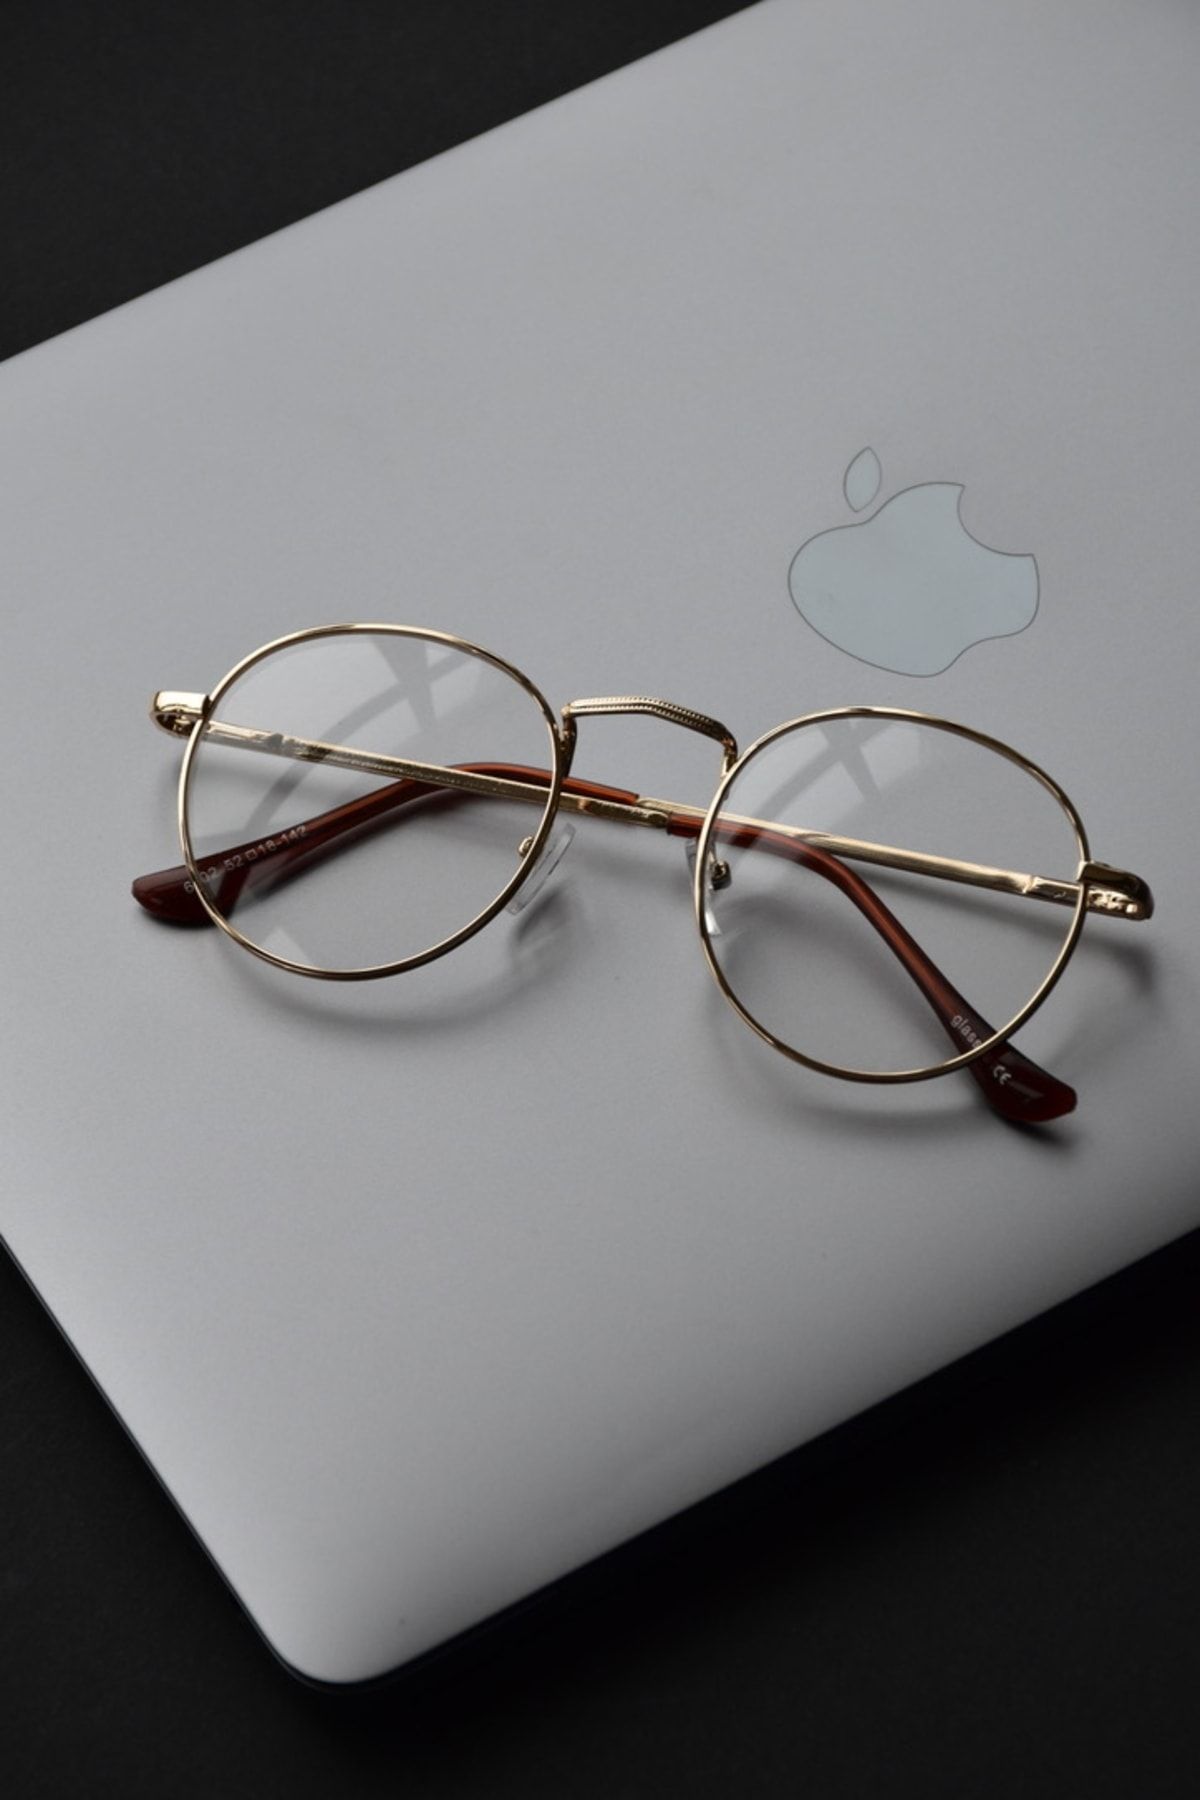 LOOKUP Mavi Işık Korumalı Gözlük Optik Uyumludur Camları Değişebilir Harry Potter Unisex Gold Şeffaf Cam